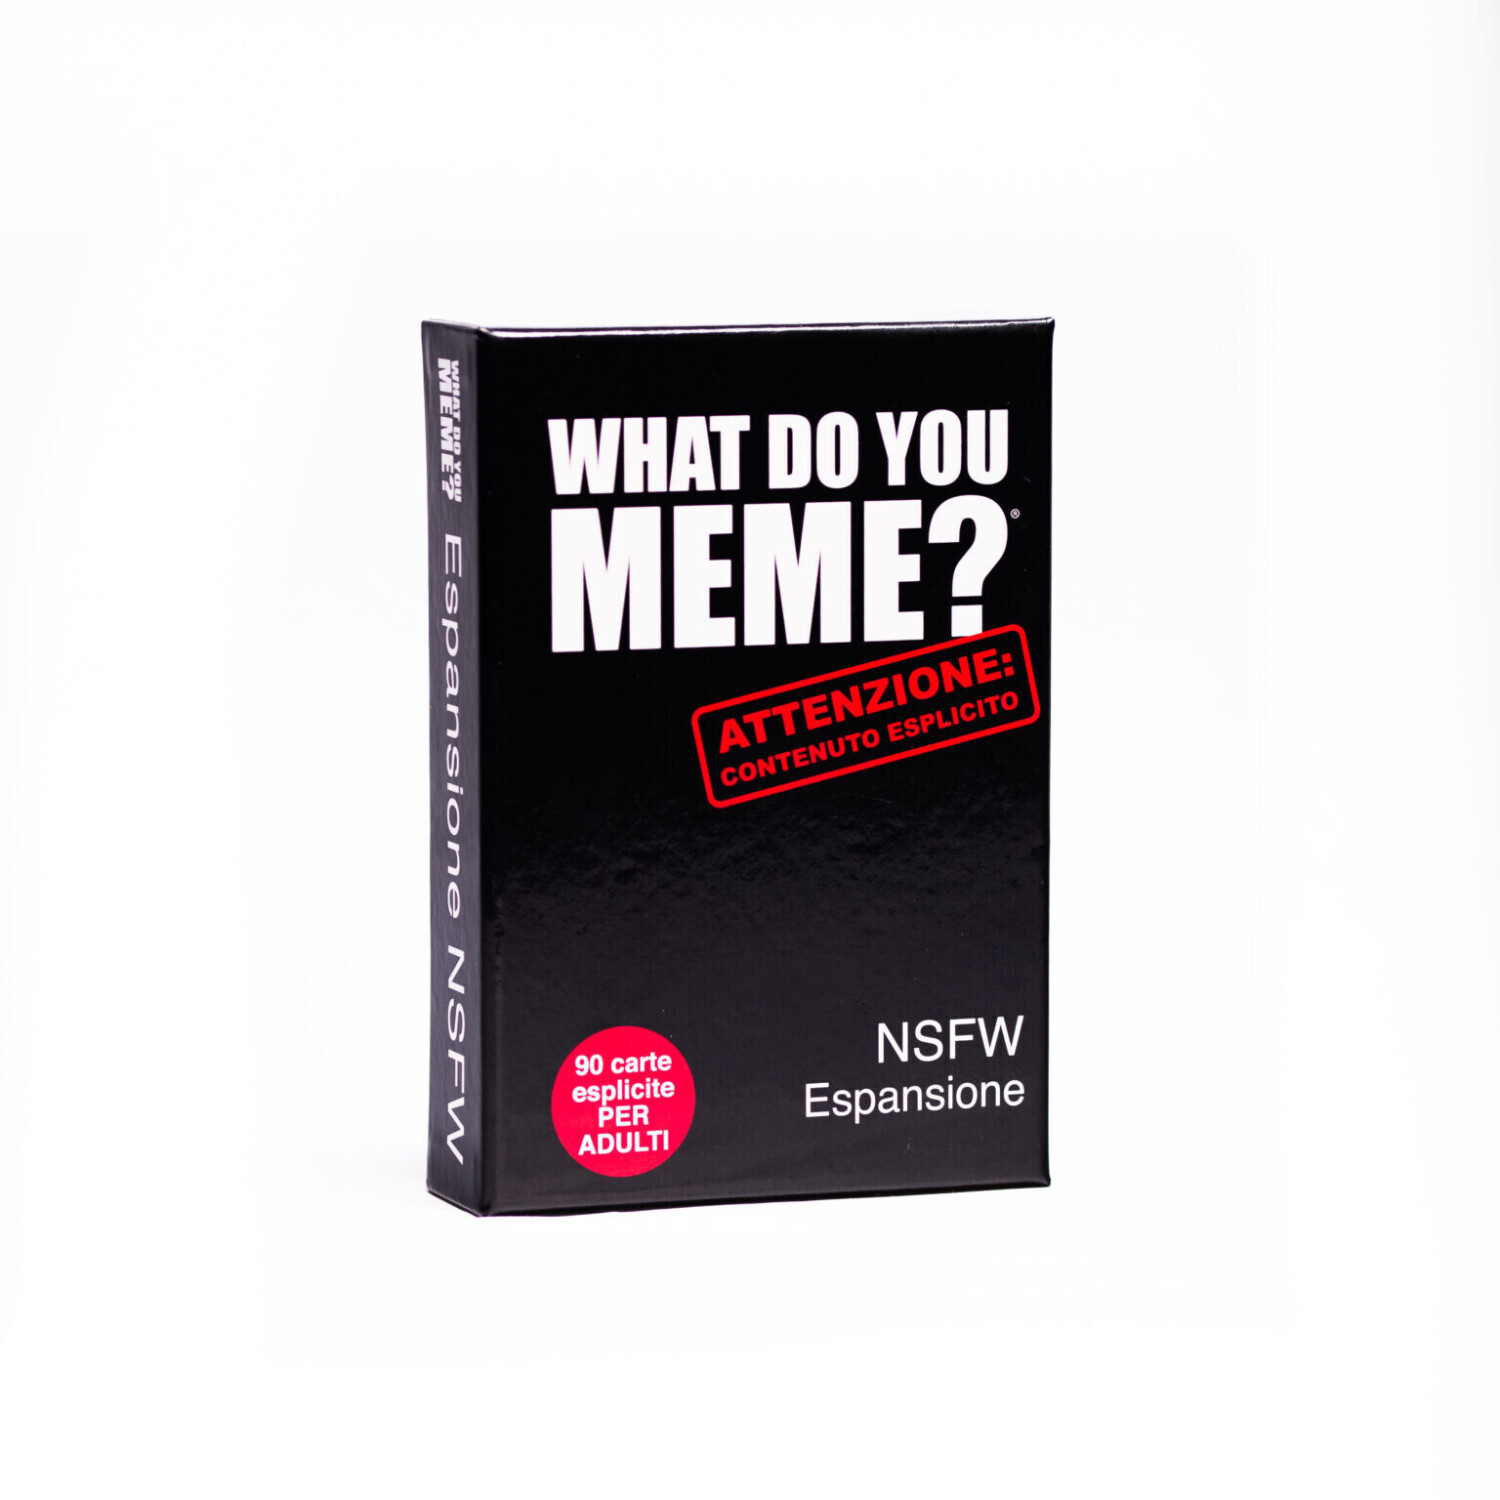 What Do You Meme? NSFW Espansione a € 9,88 (oggi)